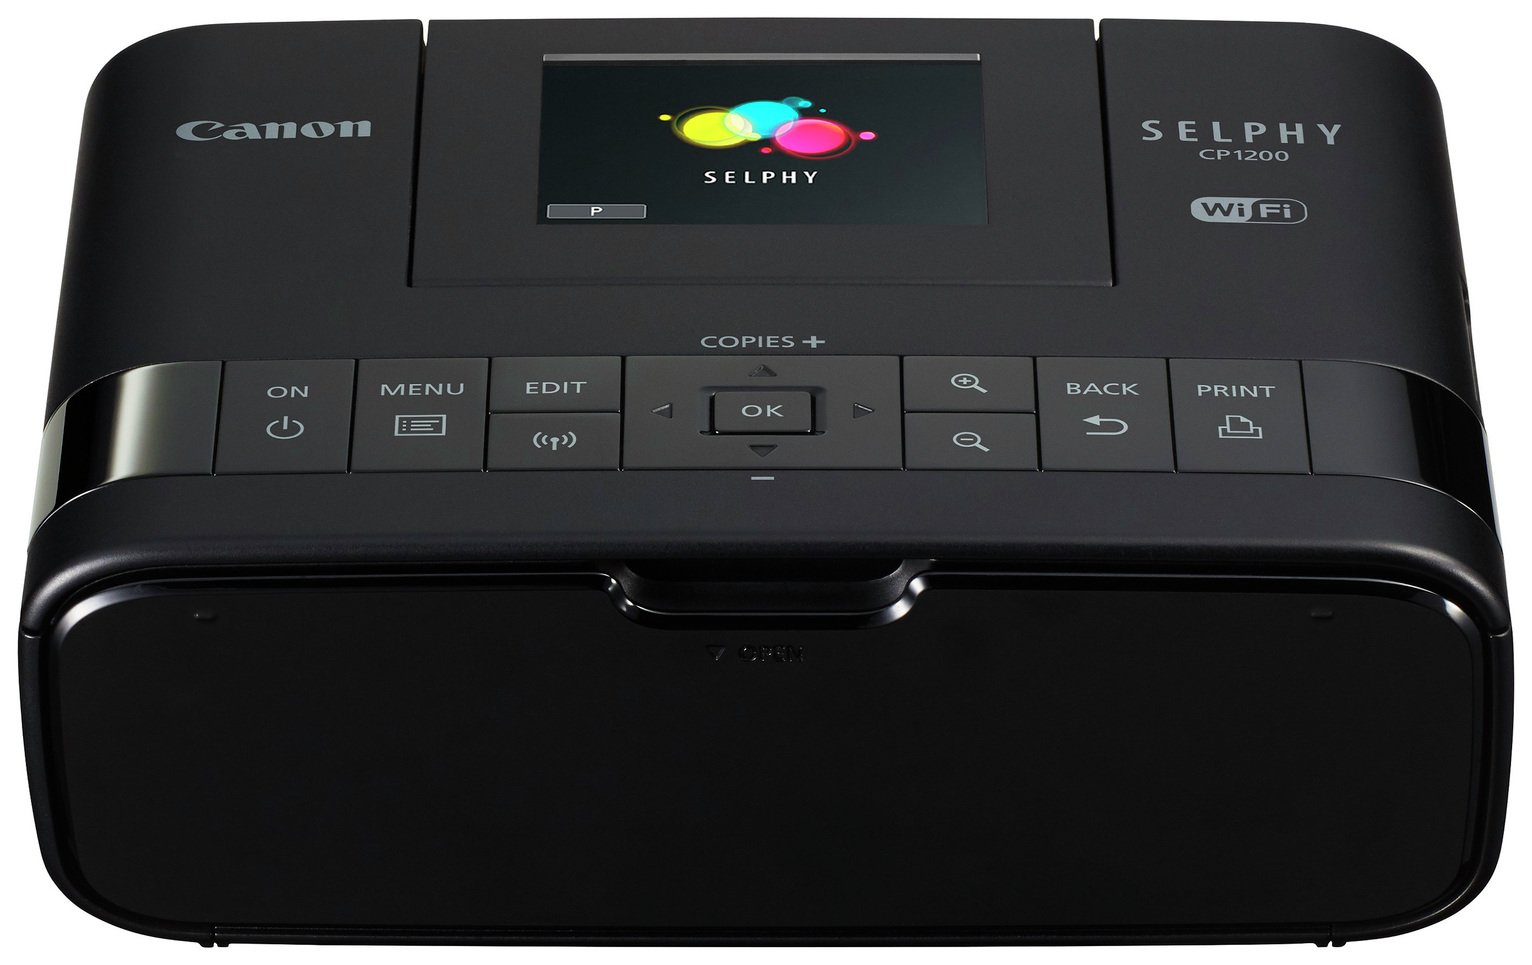 Canon Selphy Cp1300 Compact Photo Printer Reviews 9815